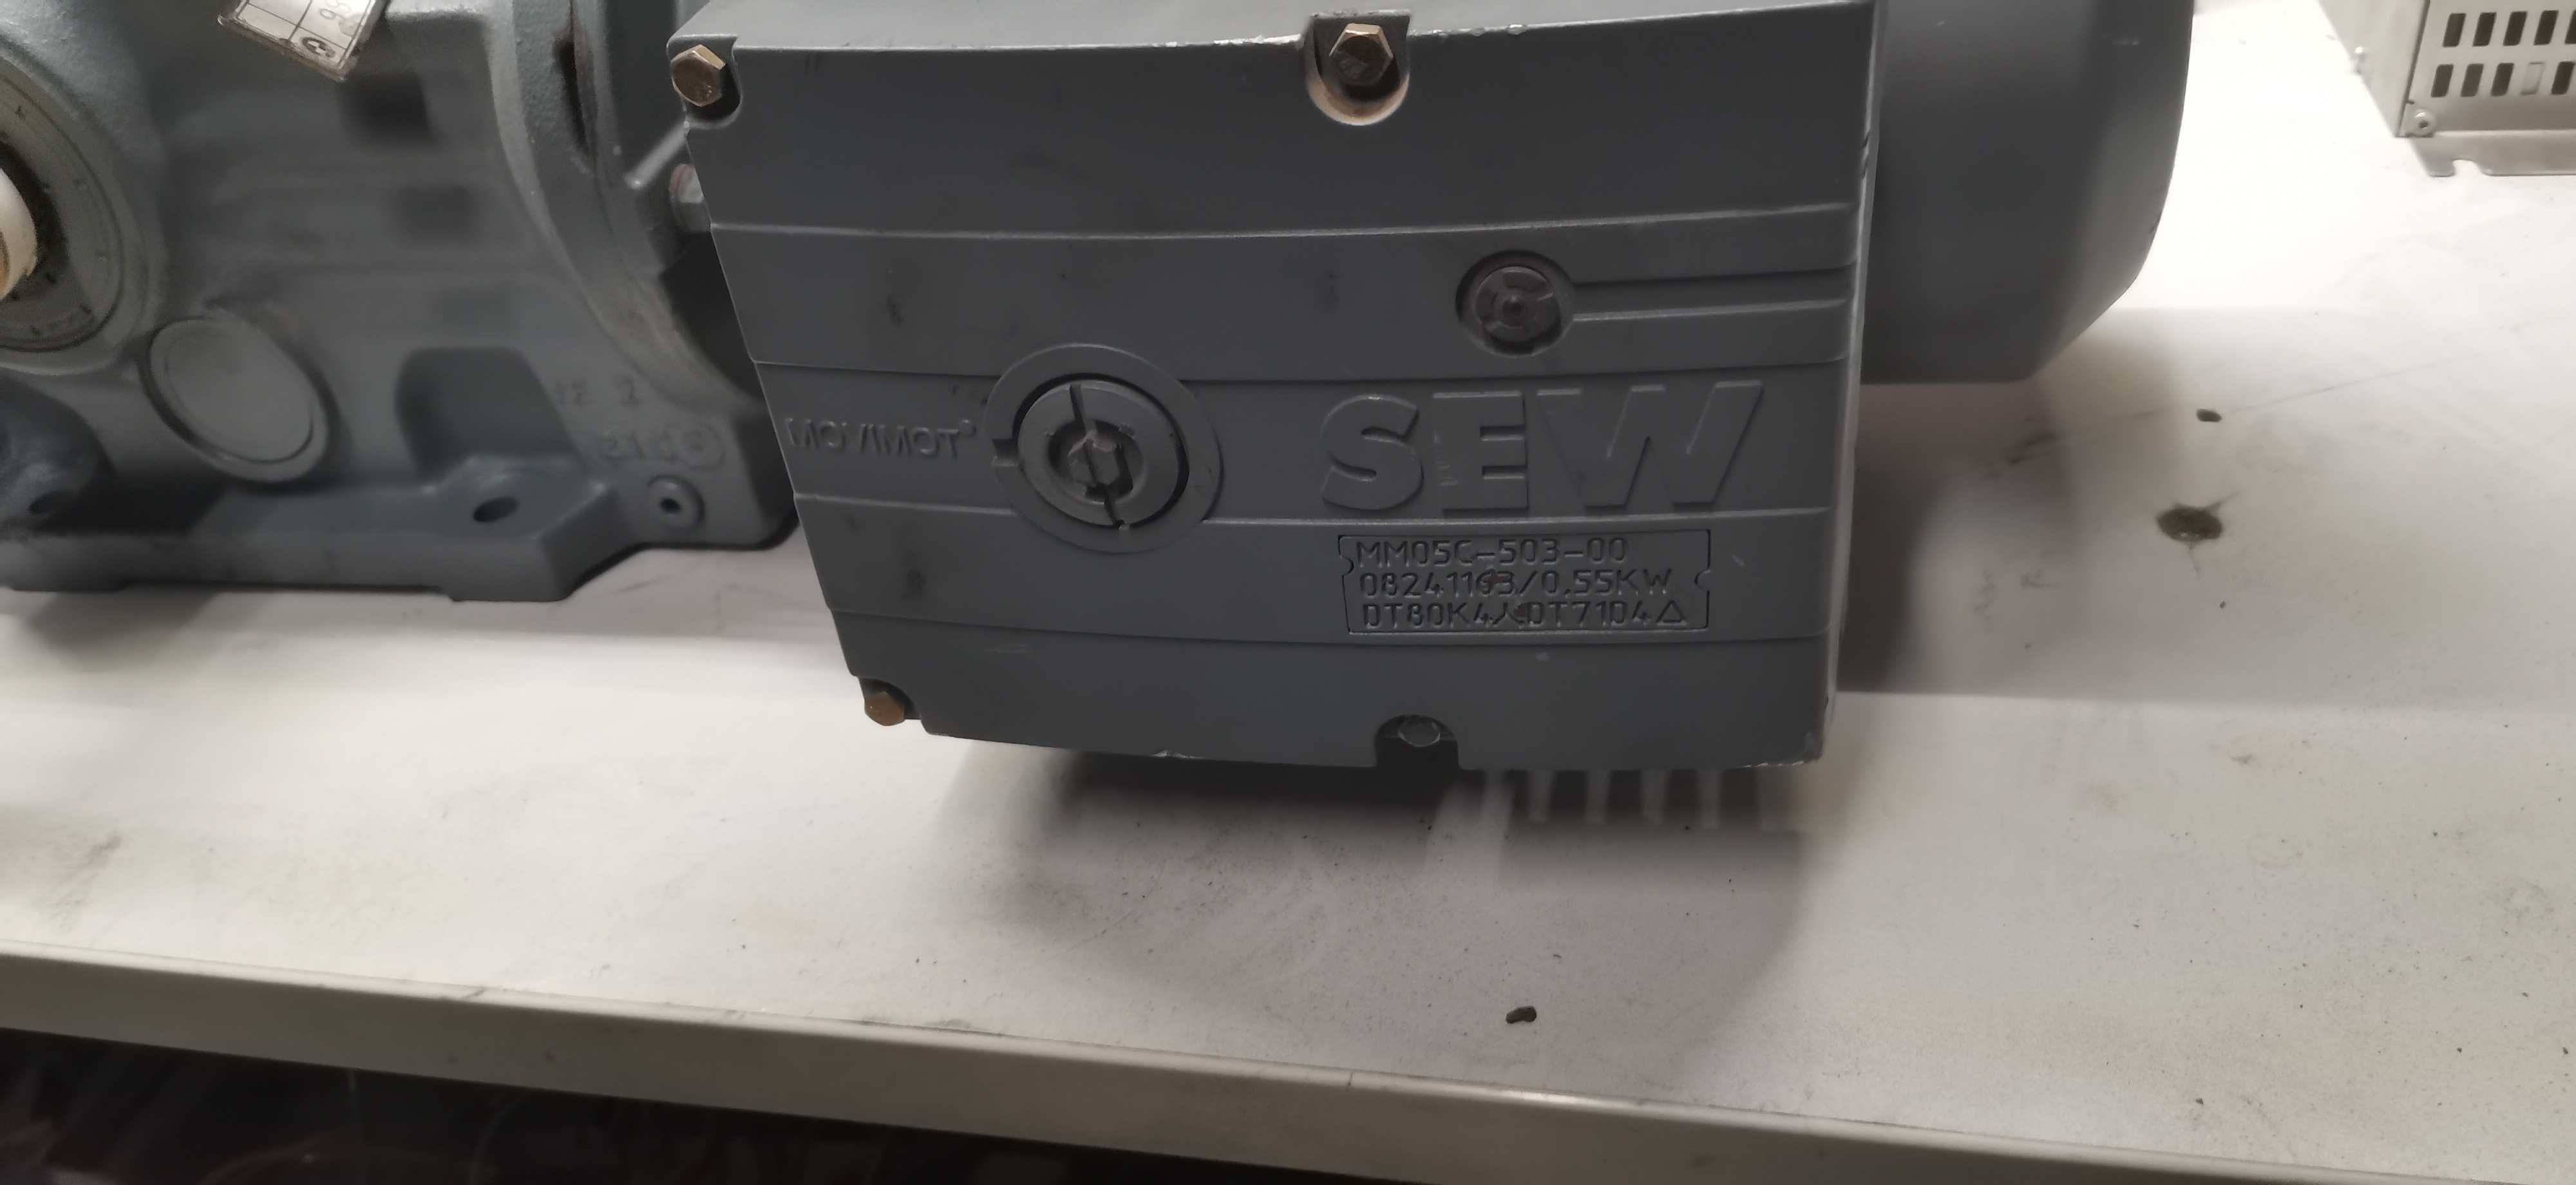 Motoreduktor sew-eurodrive 0.55kW dt80k4